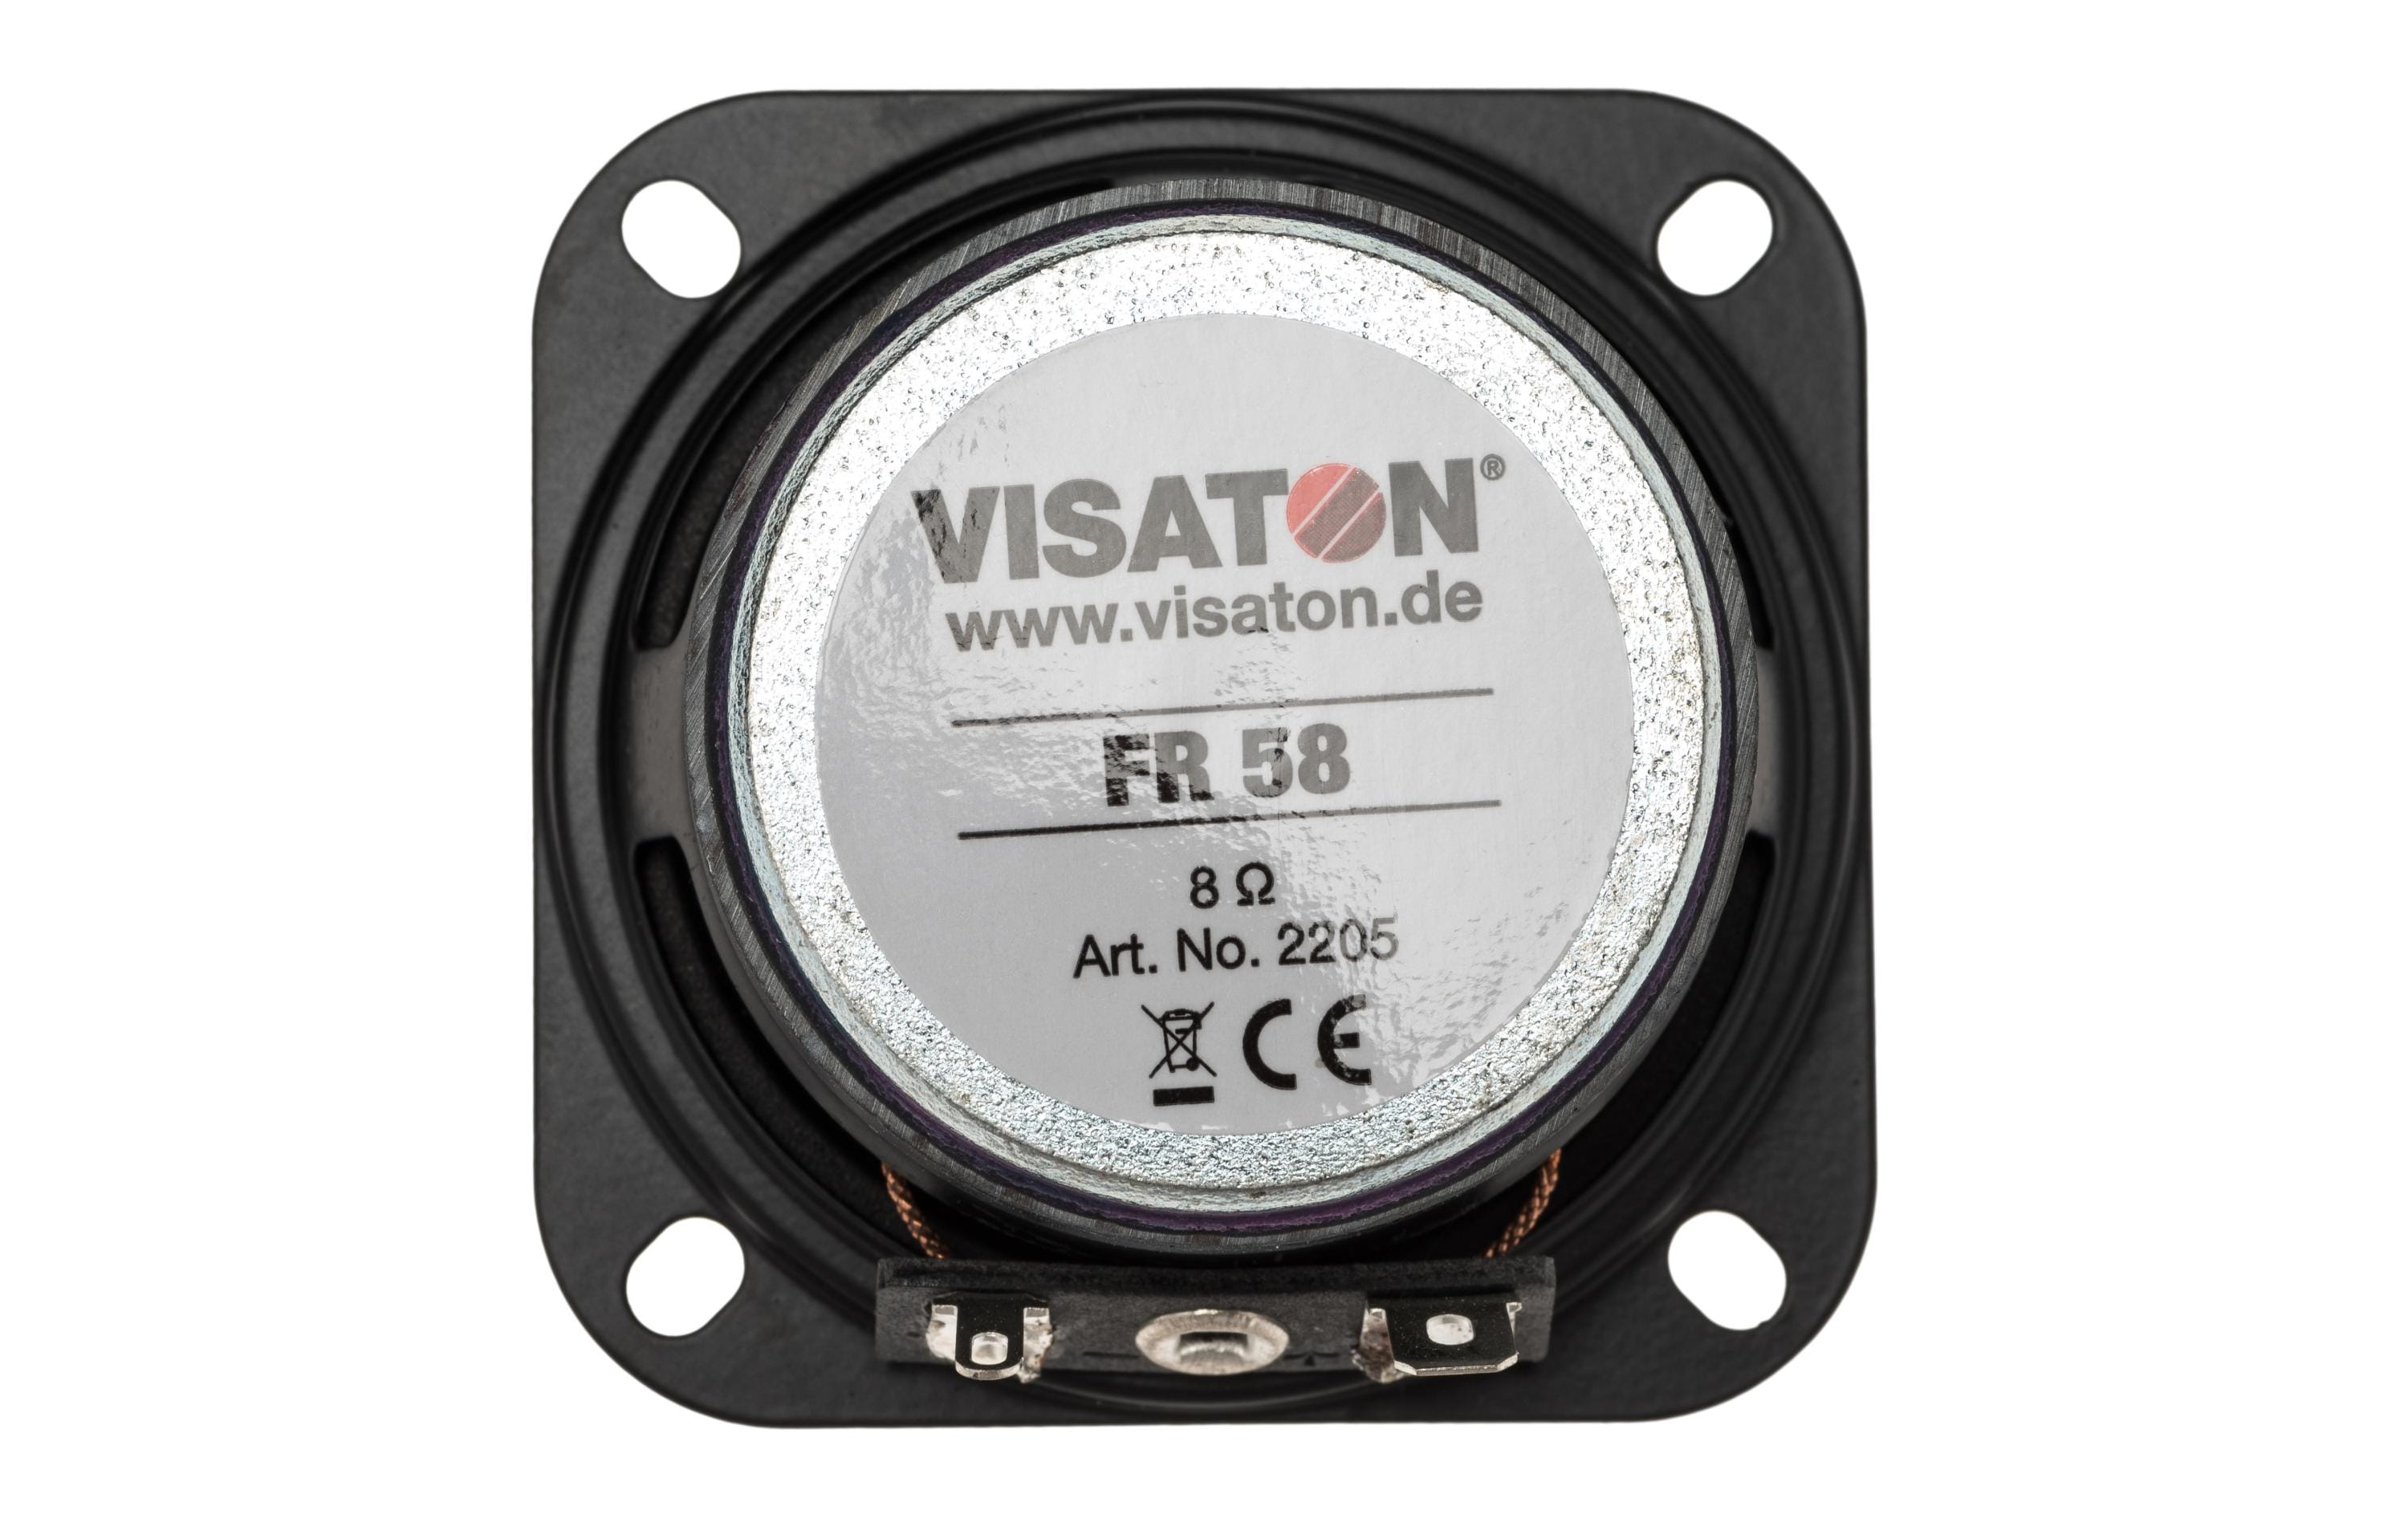 Visaton HiFi-Breitbandlautsprecher FR 58